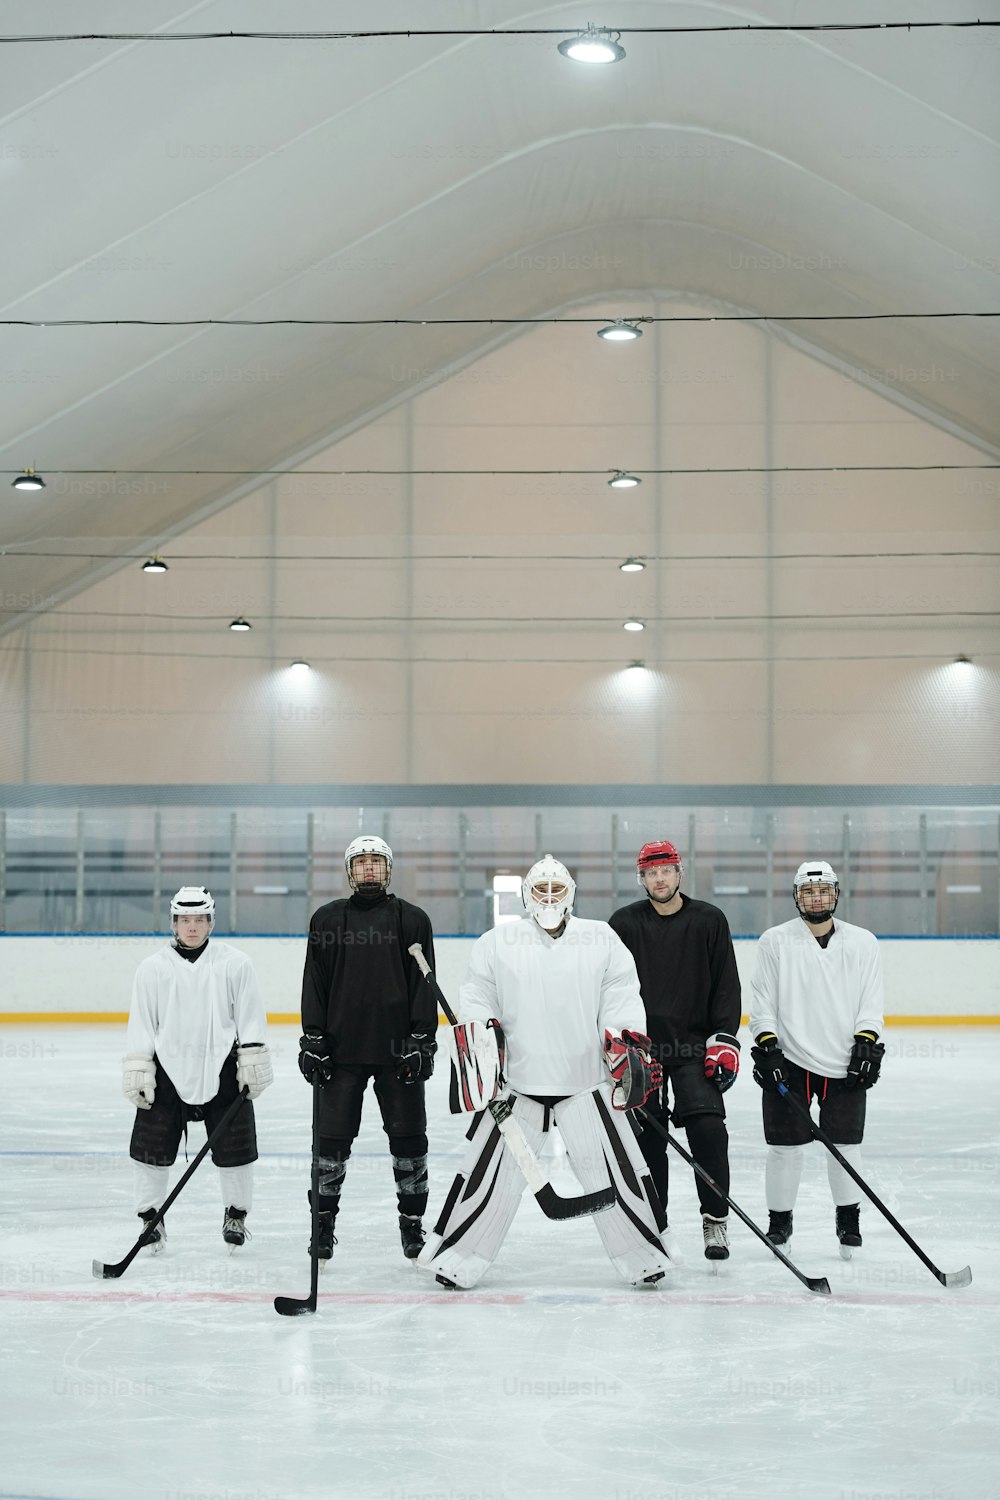 Grupo de jogadores de hóquei e seu treinador em uniforme esportivo, luvas, patins e capacetes de proteção em pé na pista de gelo enquanto aguardam o jogo